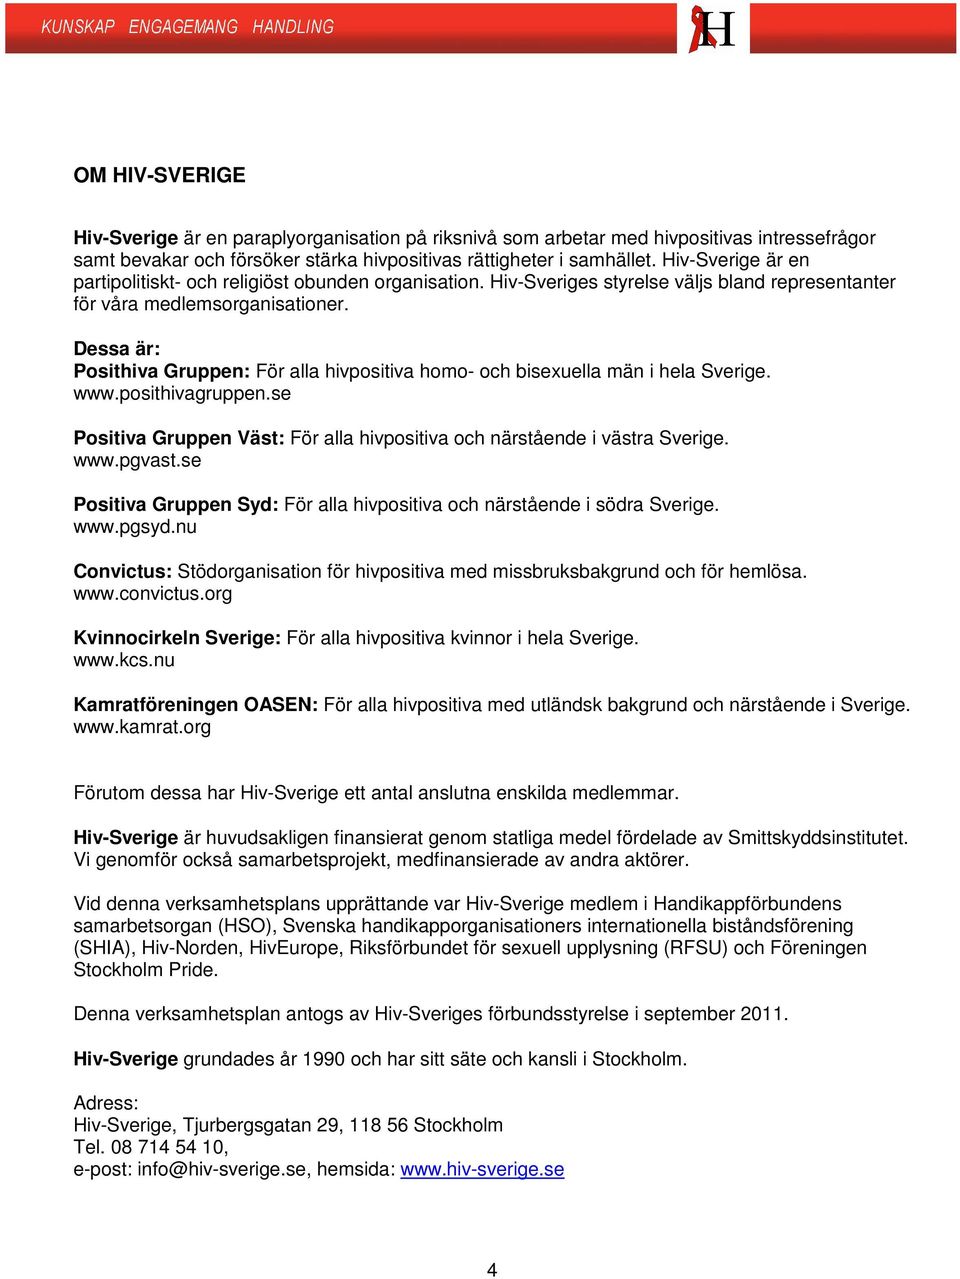 Dessa är: Posithiva Gruppen: För alla hivpositiva homo- och bisexuella män i hela Sverige. www.posithivagruppen.se Positiva Gruppen Väst: För alla hivpositiva och närstående i västra Sverige. www.pgvast.